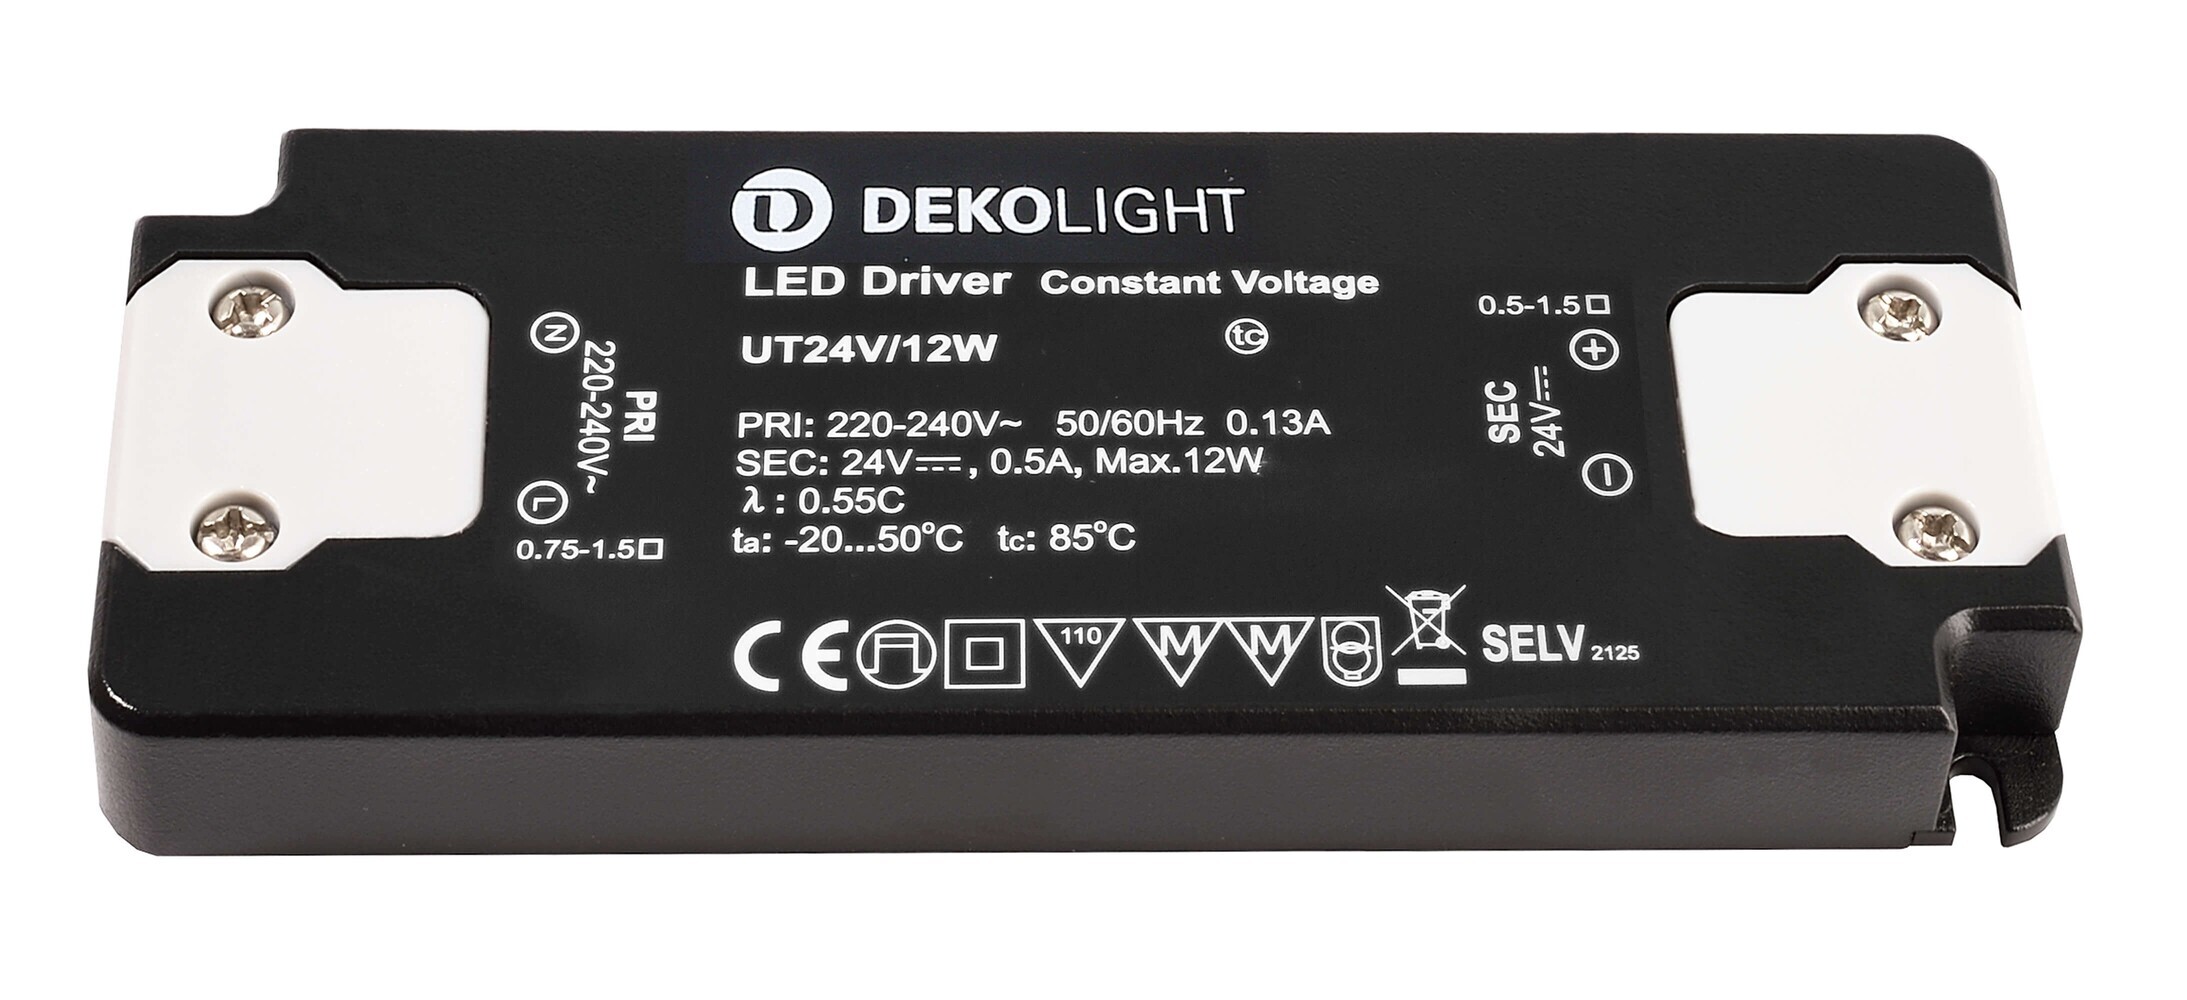 Hochwertiges LED Netzteil von der Marke Deko-Light, perfekt geeignet, um schimmernde Lichteffekte zu erzeugen